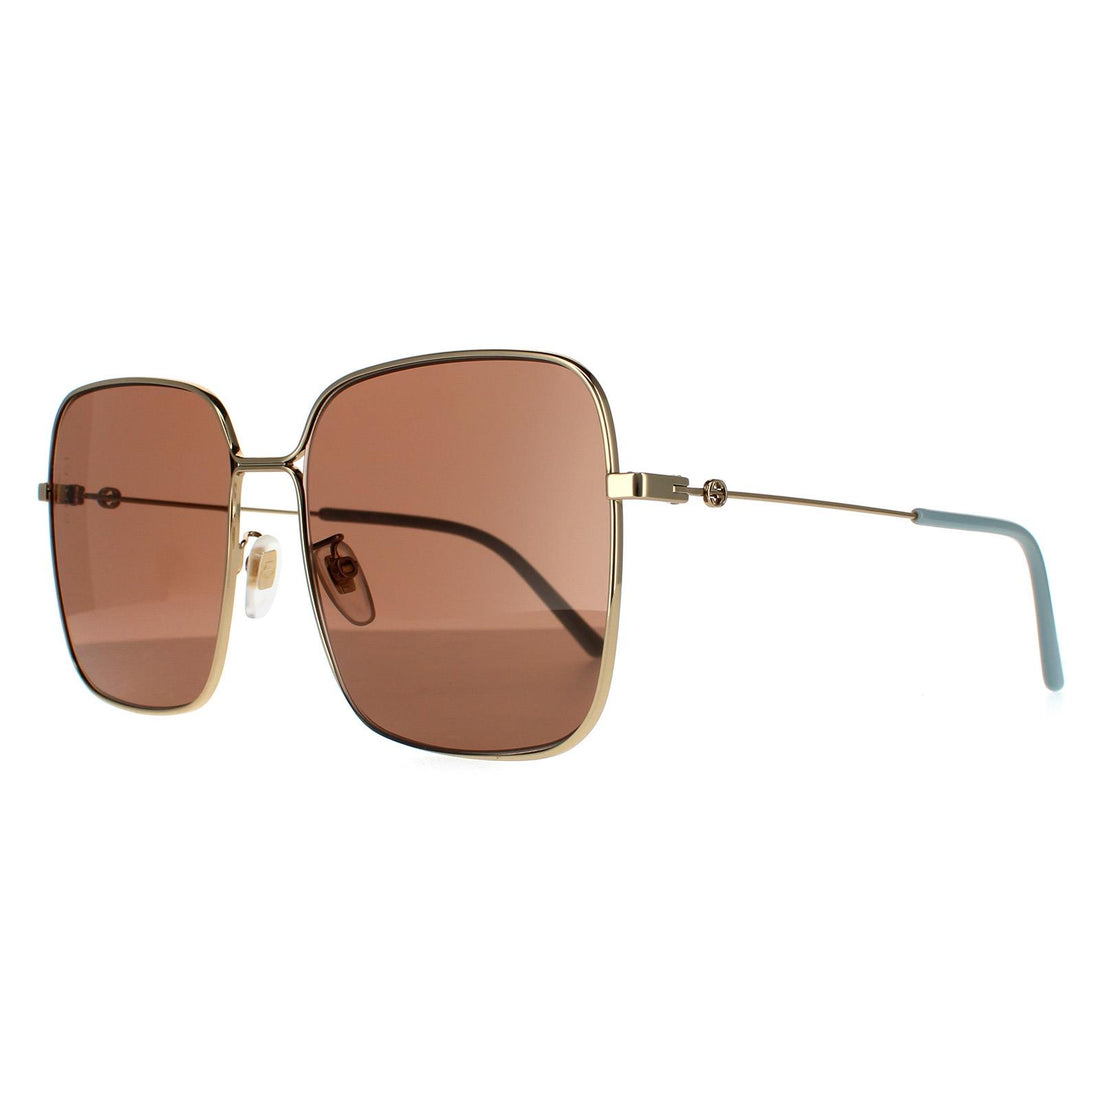 Gucci Sunglasses GG0443S 002 Gold Brown